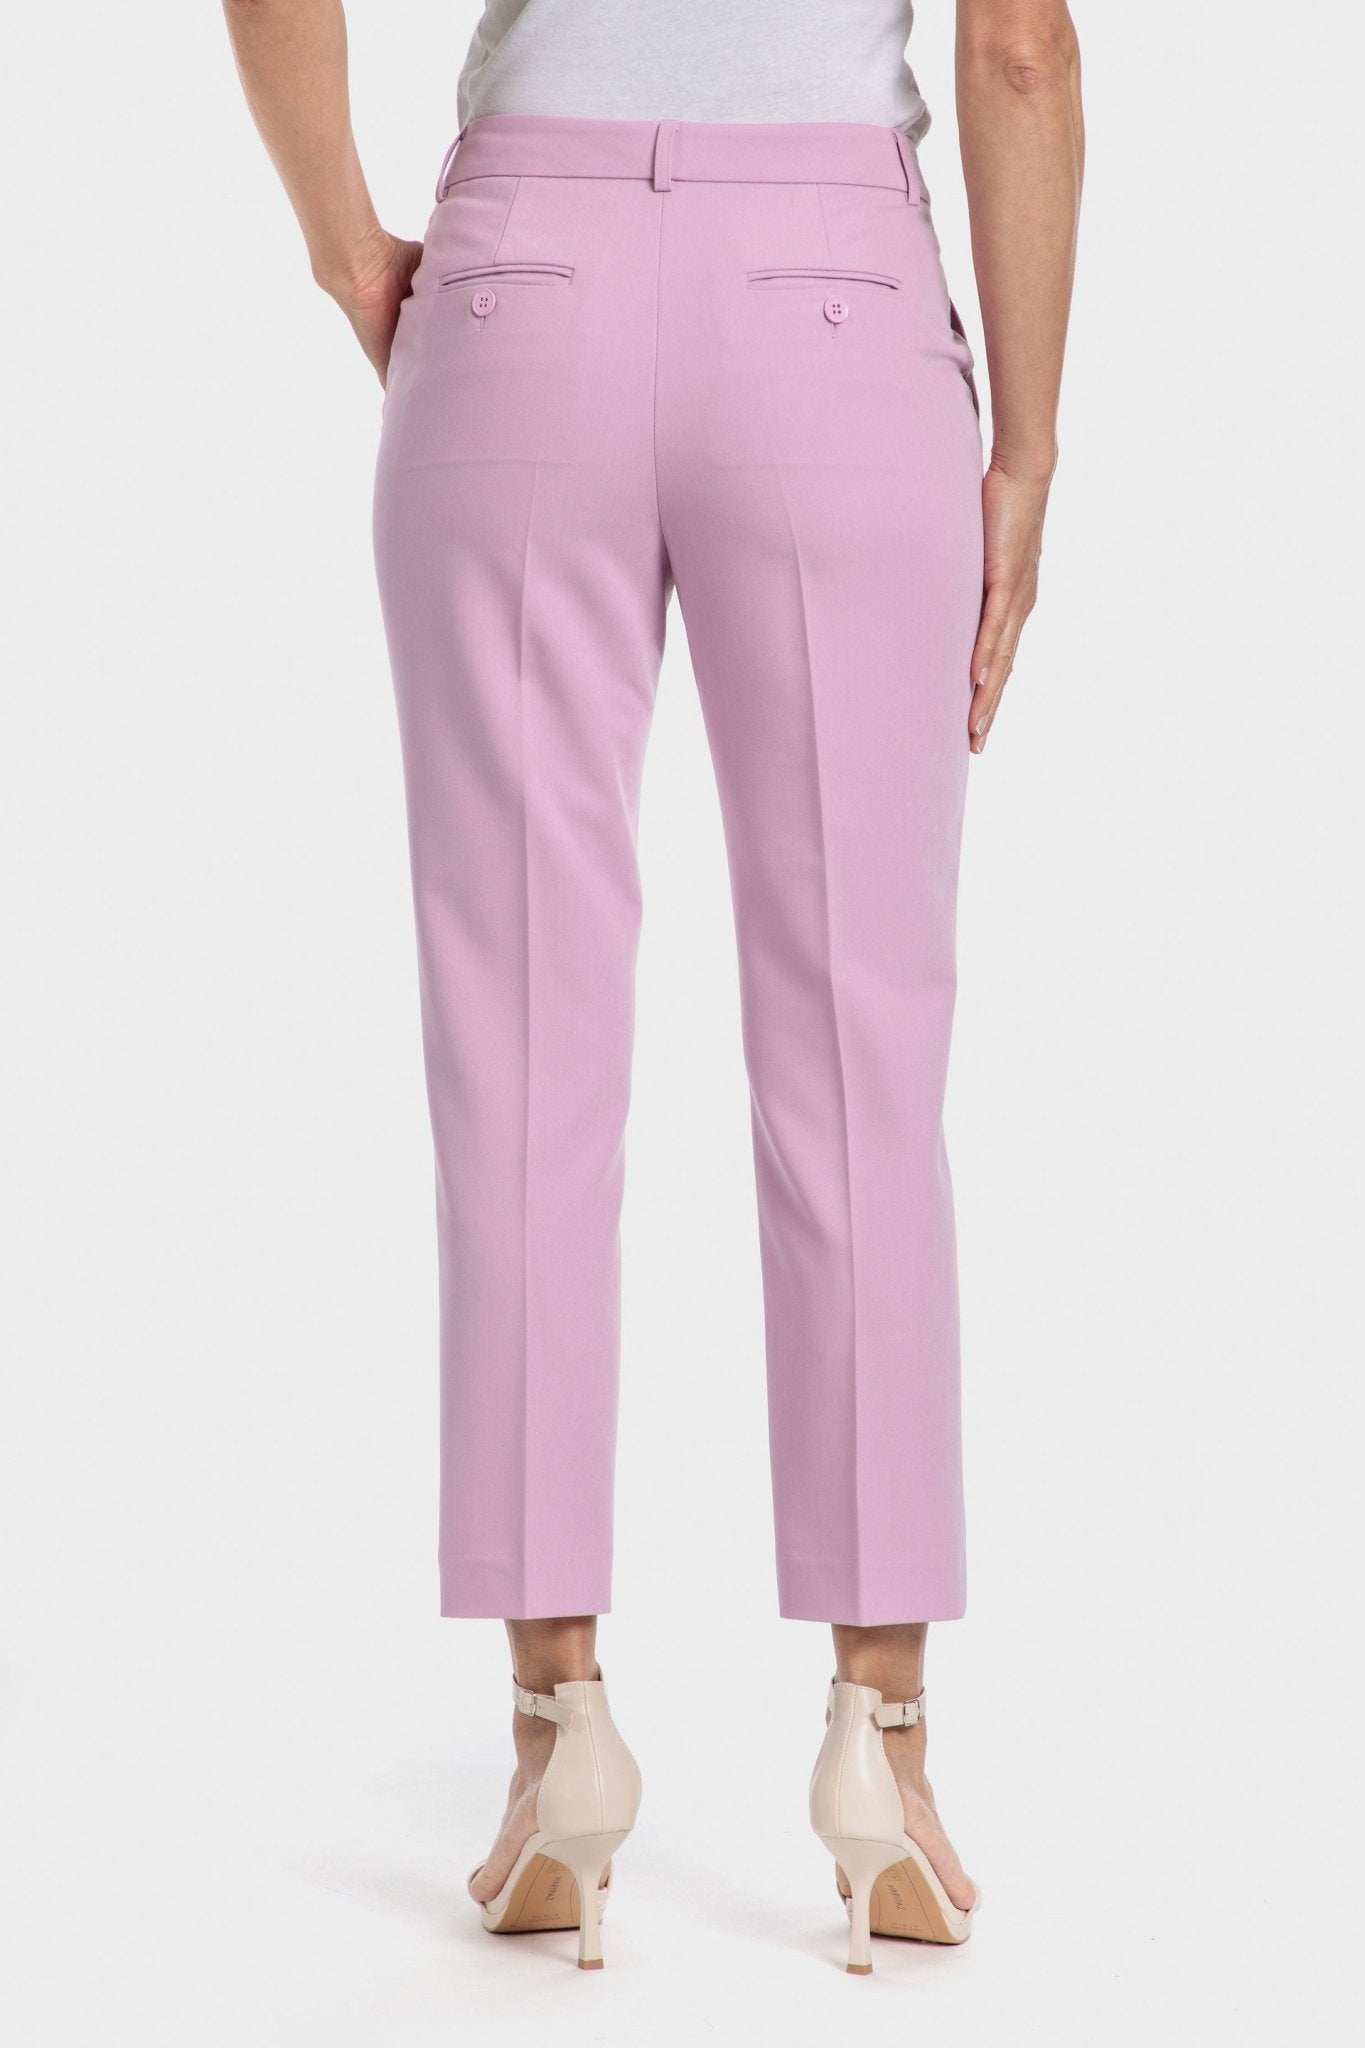 PUNT ROMA - מכנסי אלגנט בצבע ורוד - MASHBIR//365